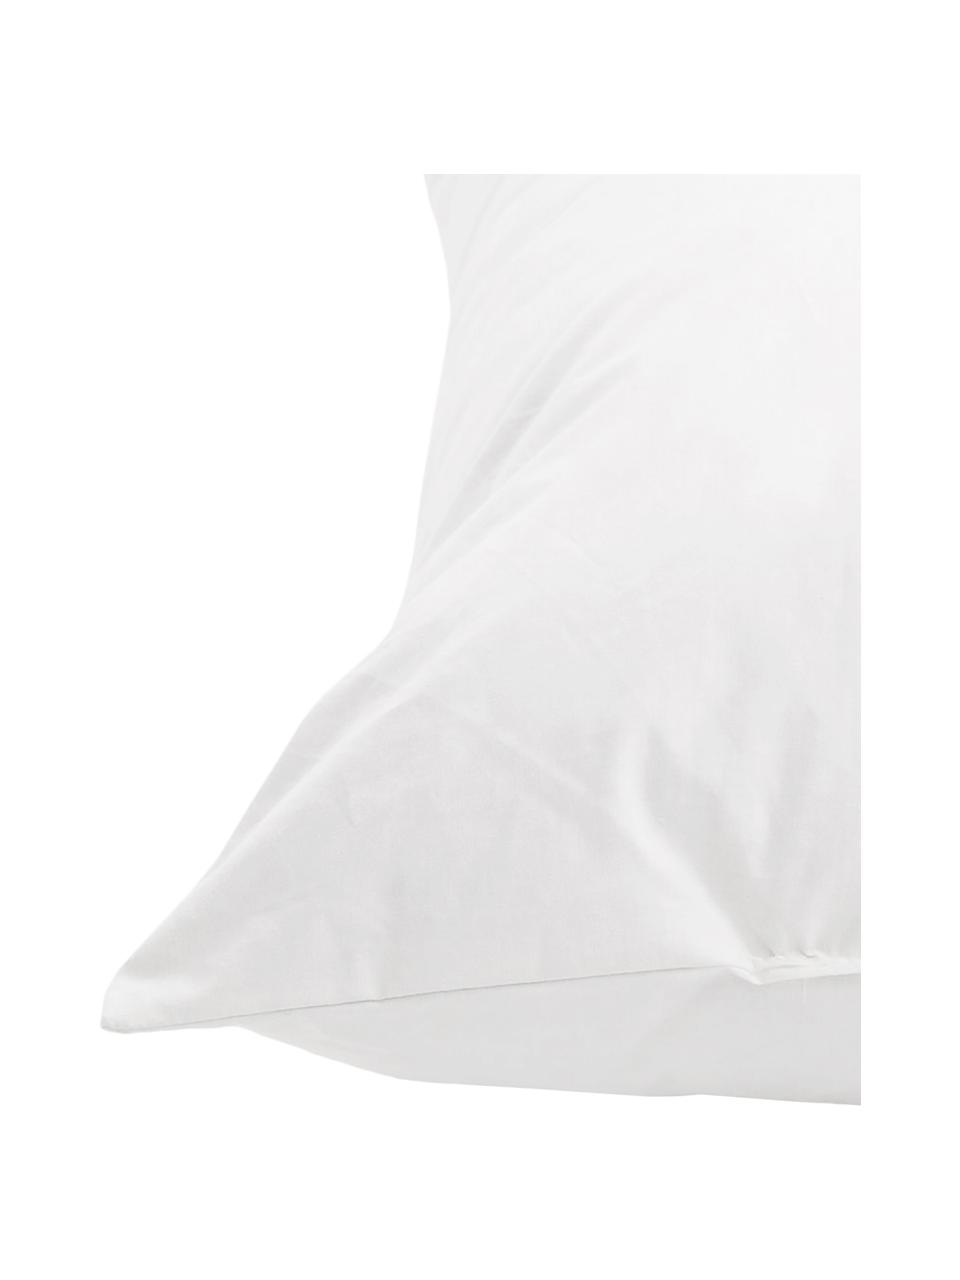 Wkład do poduszki dekoracyjnej z pierza Premium, 45x45, Biały, S 45 x D 45 cm